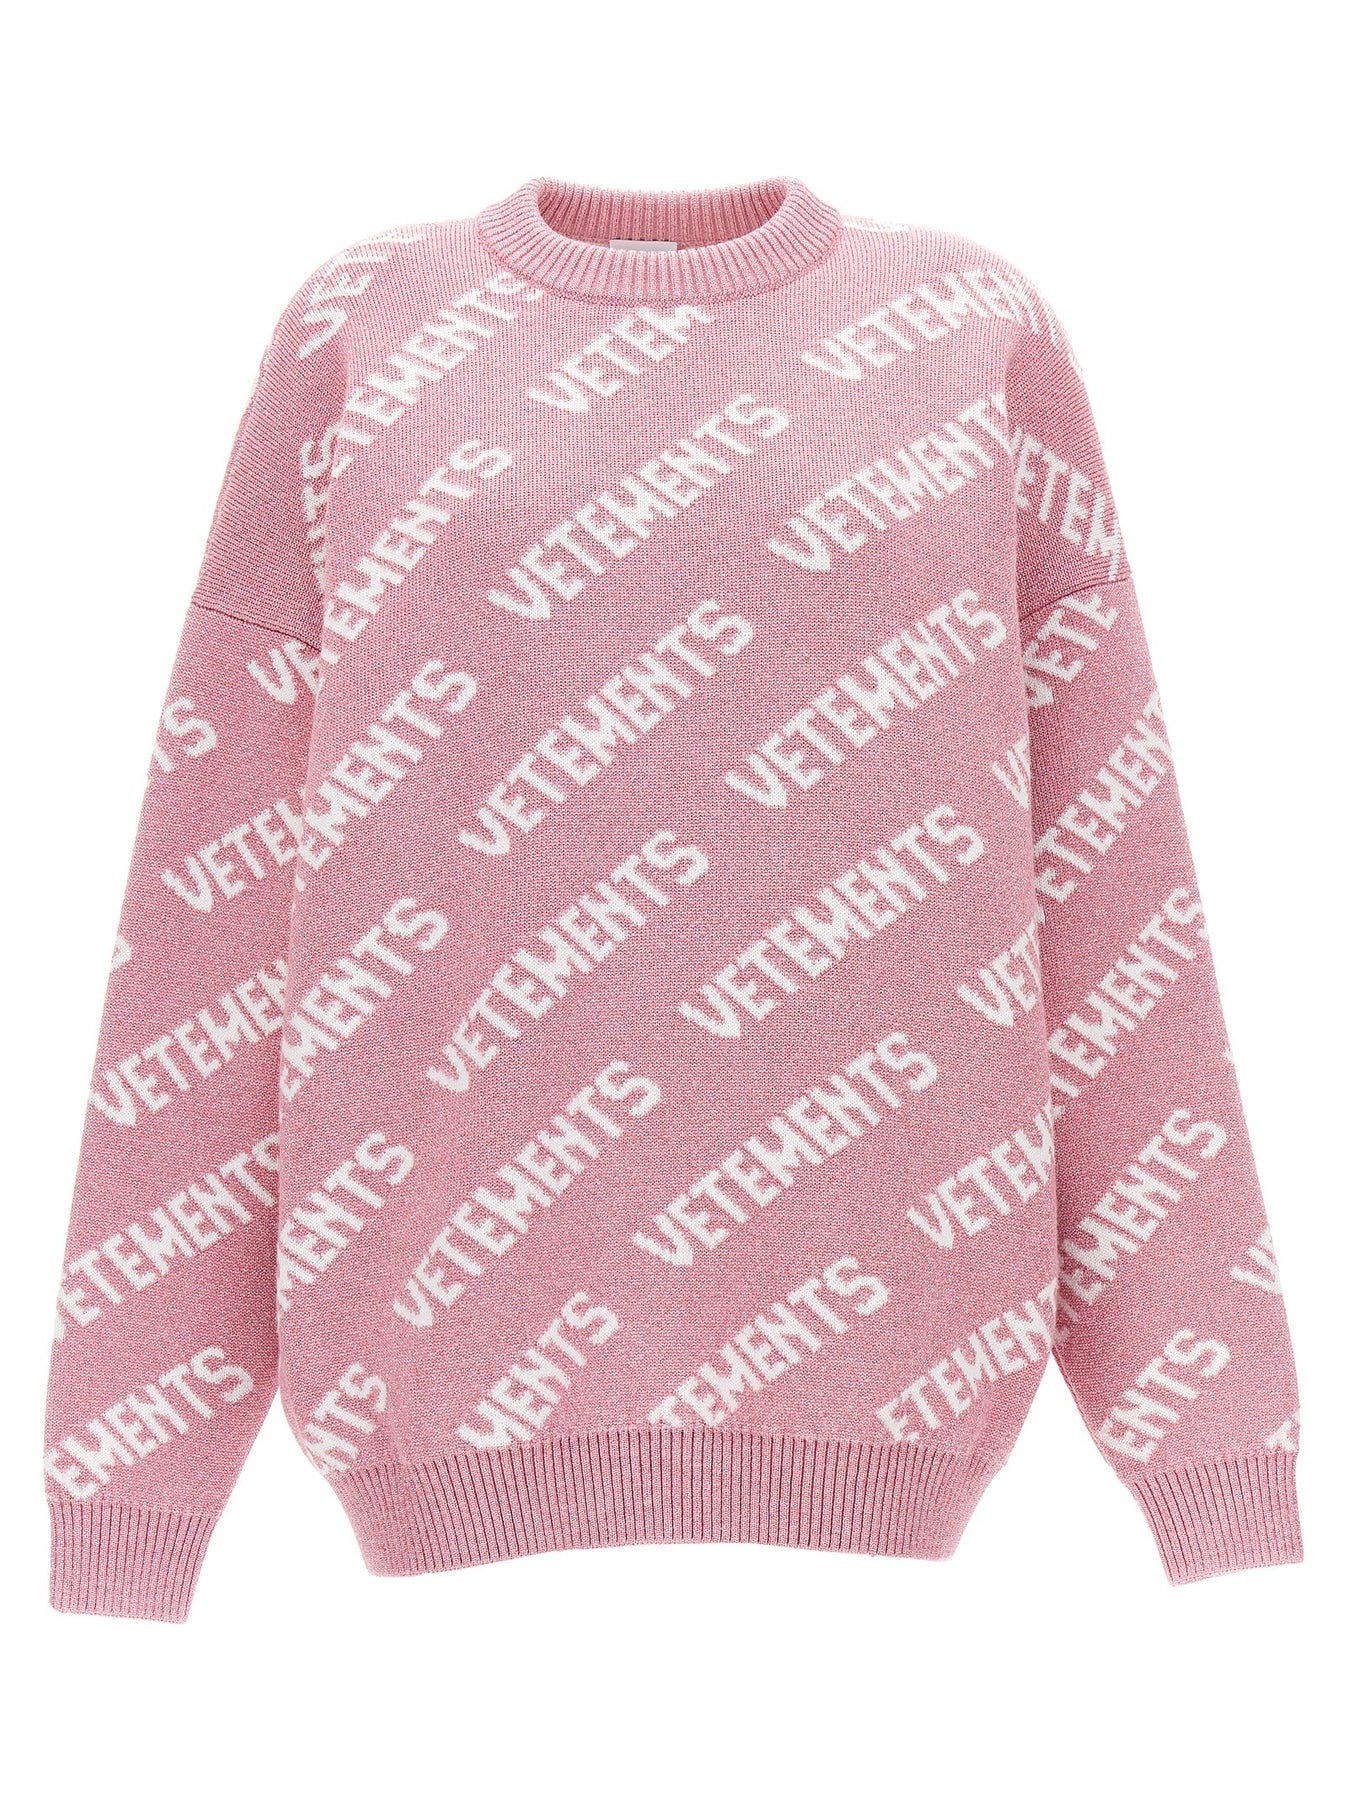 Lurex Monogram Sweater, Cardigans Pink - 1